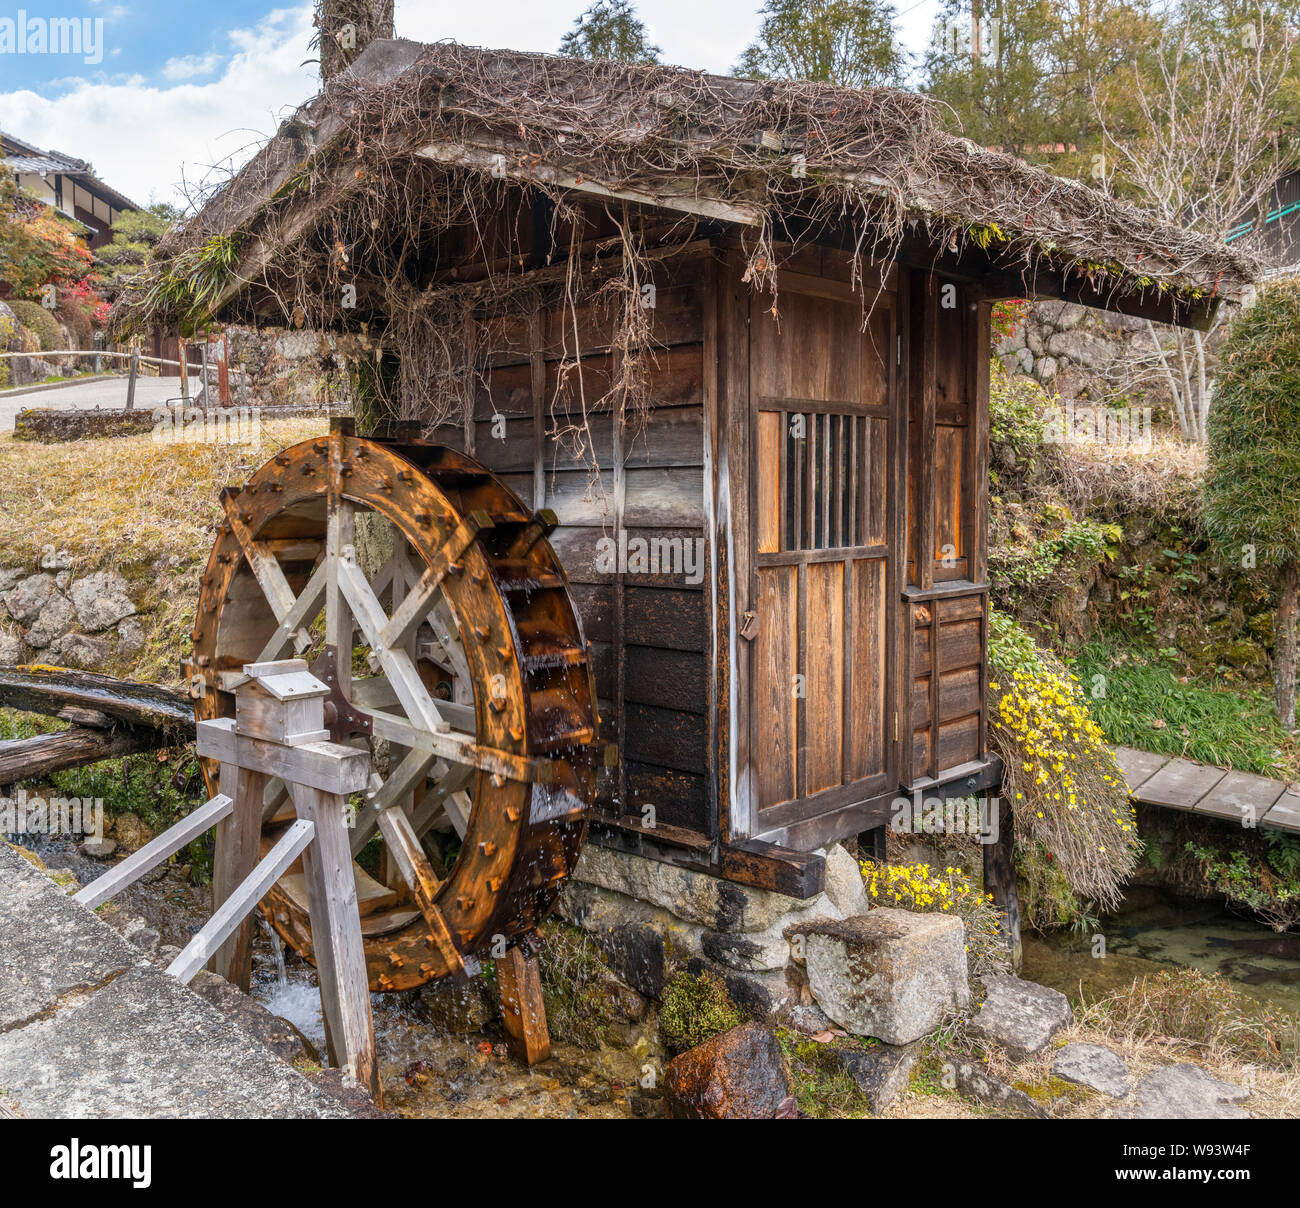 Water mill in the old post town of Tsumago (Tsumago-juku), Nagiso, Kiso District, Nagano Prefecture, Japan Stock Photo